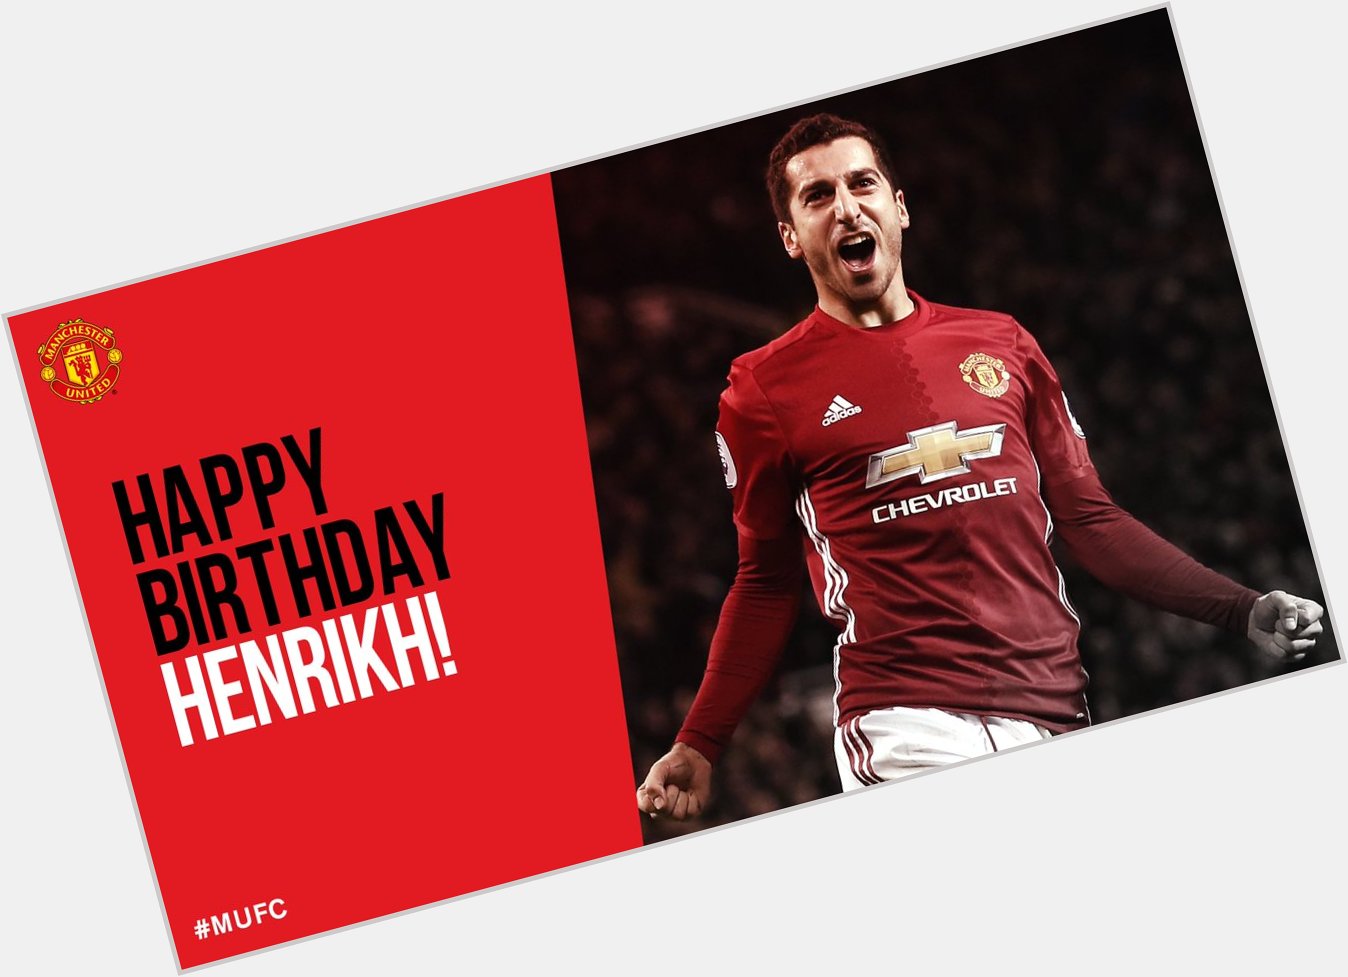 Happy 28th birthday, Henrikh Mkhitaryan! 